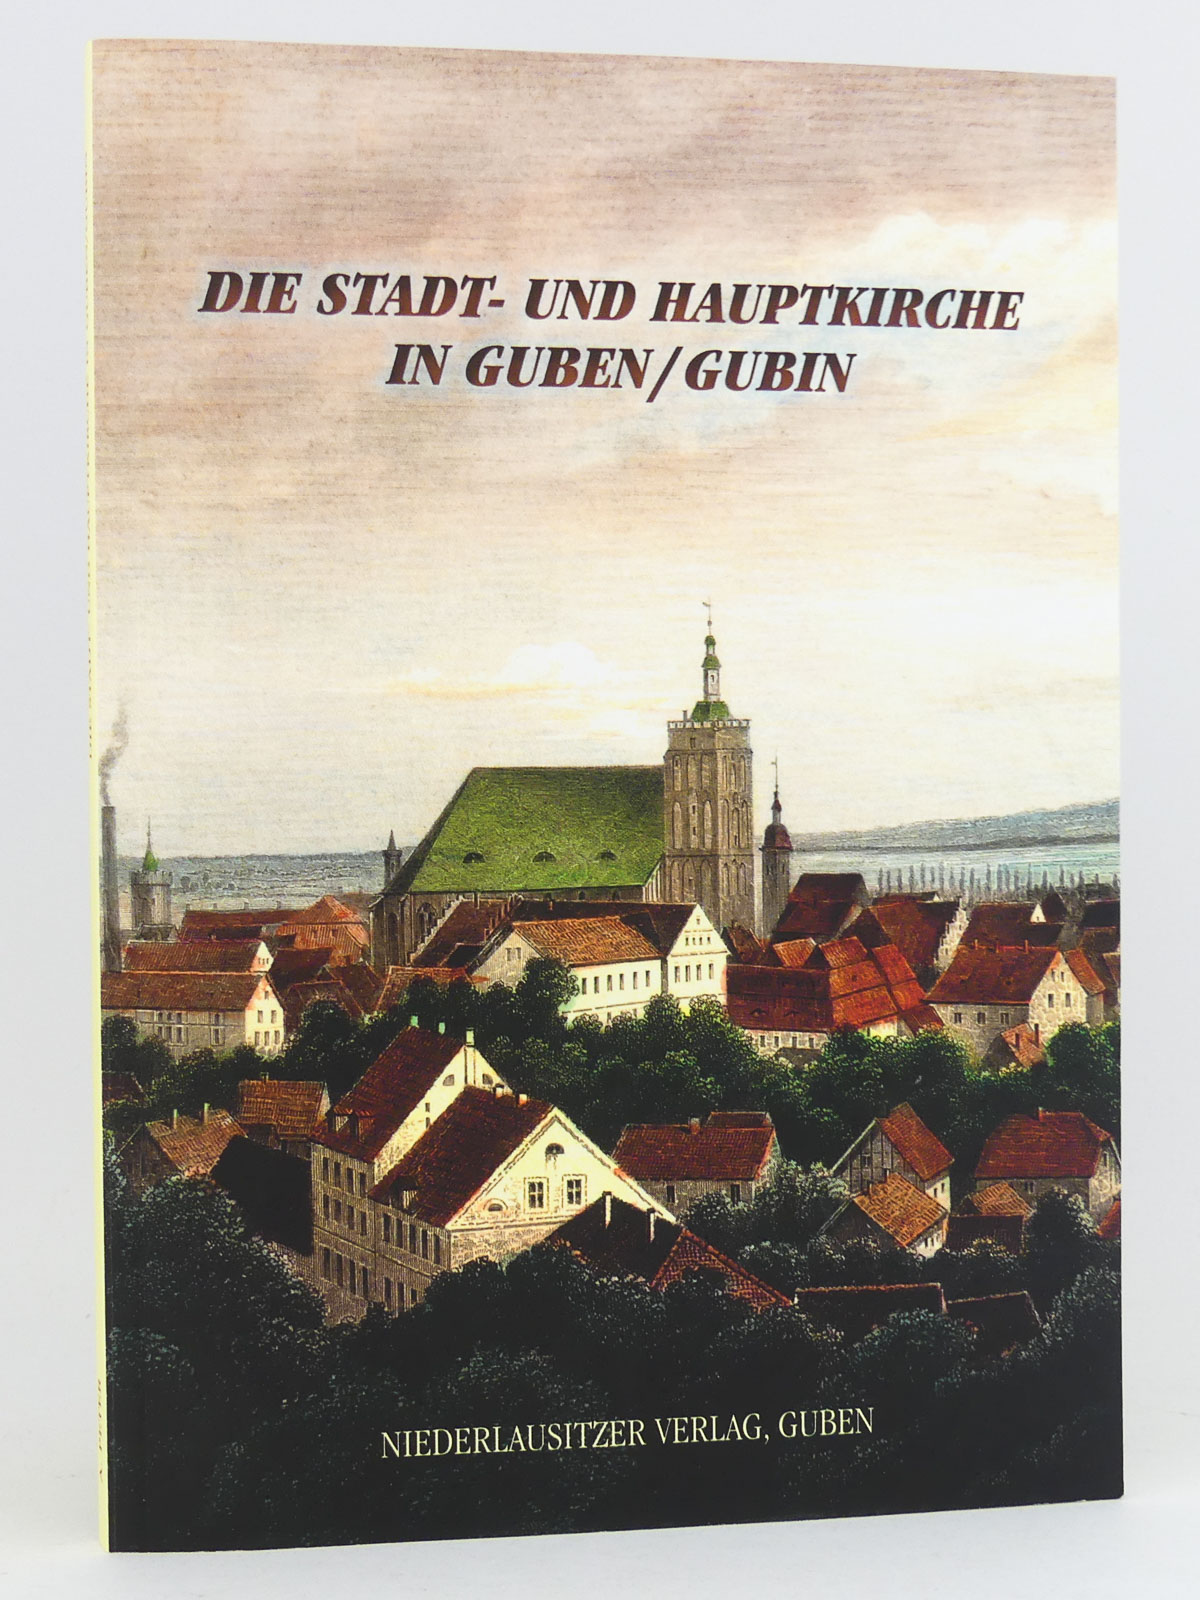 Die Stadt- und Hauptkirche in Guben/Gubin: Eine Bau- und Kulturgeschichte